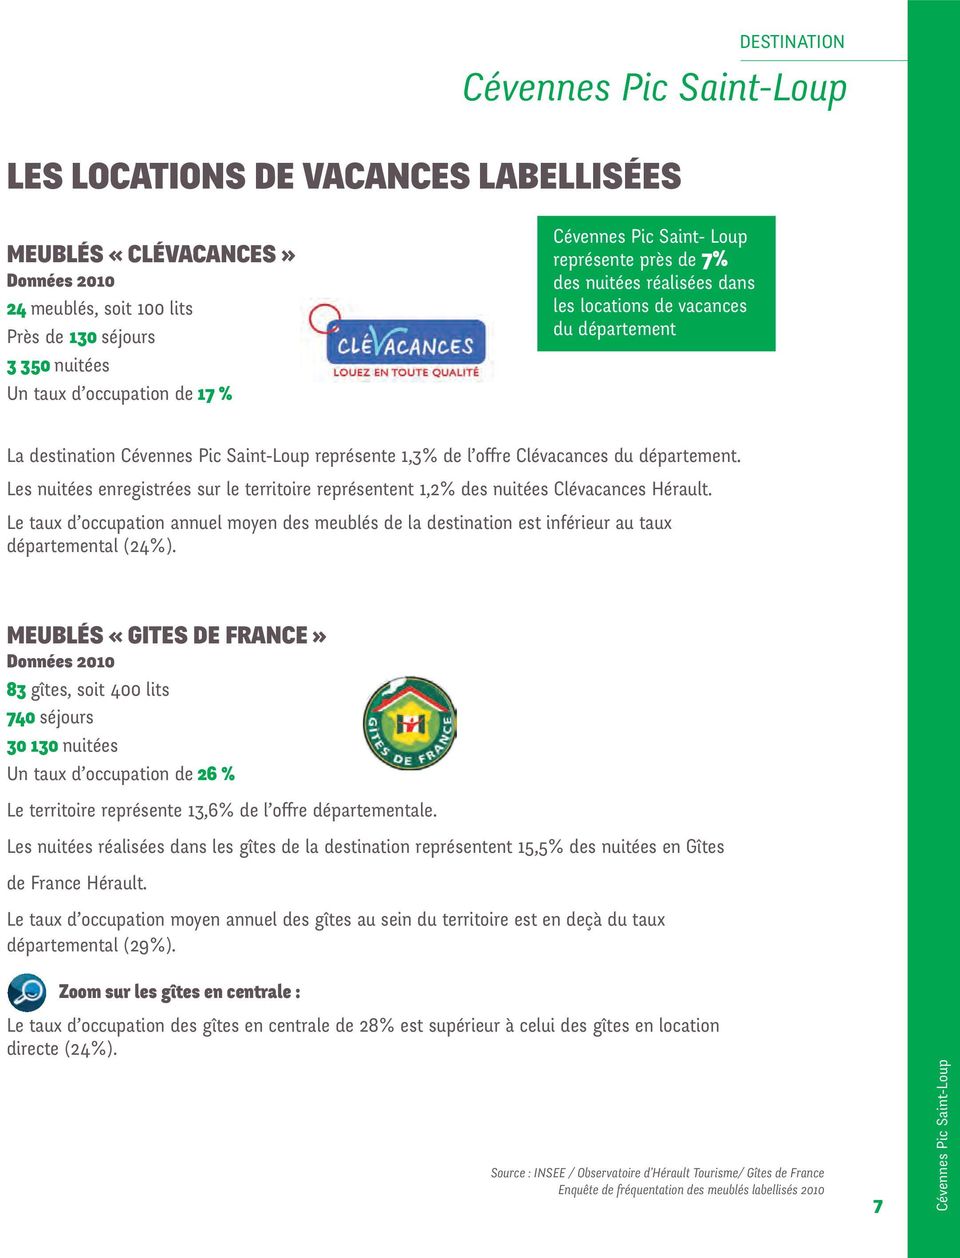 Les nuitées enregistrées sur le territoire représentent 1,2% des nuitées Clévacances Hérault. Le taux d occupation annuel moyen des meublés de la destination est inférieur au taux départemental (24%).